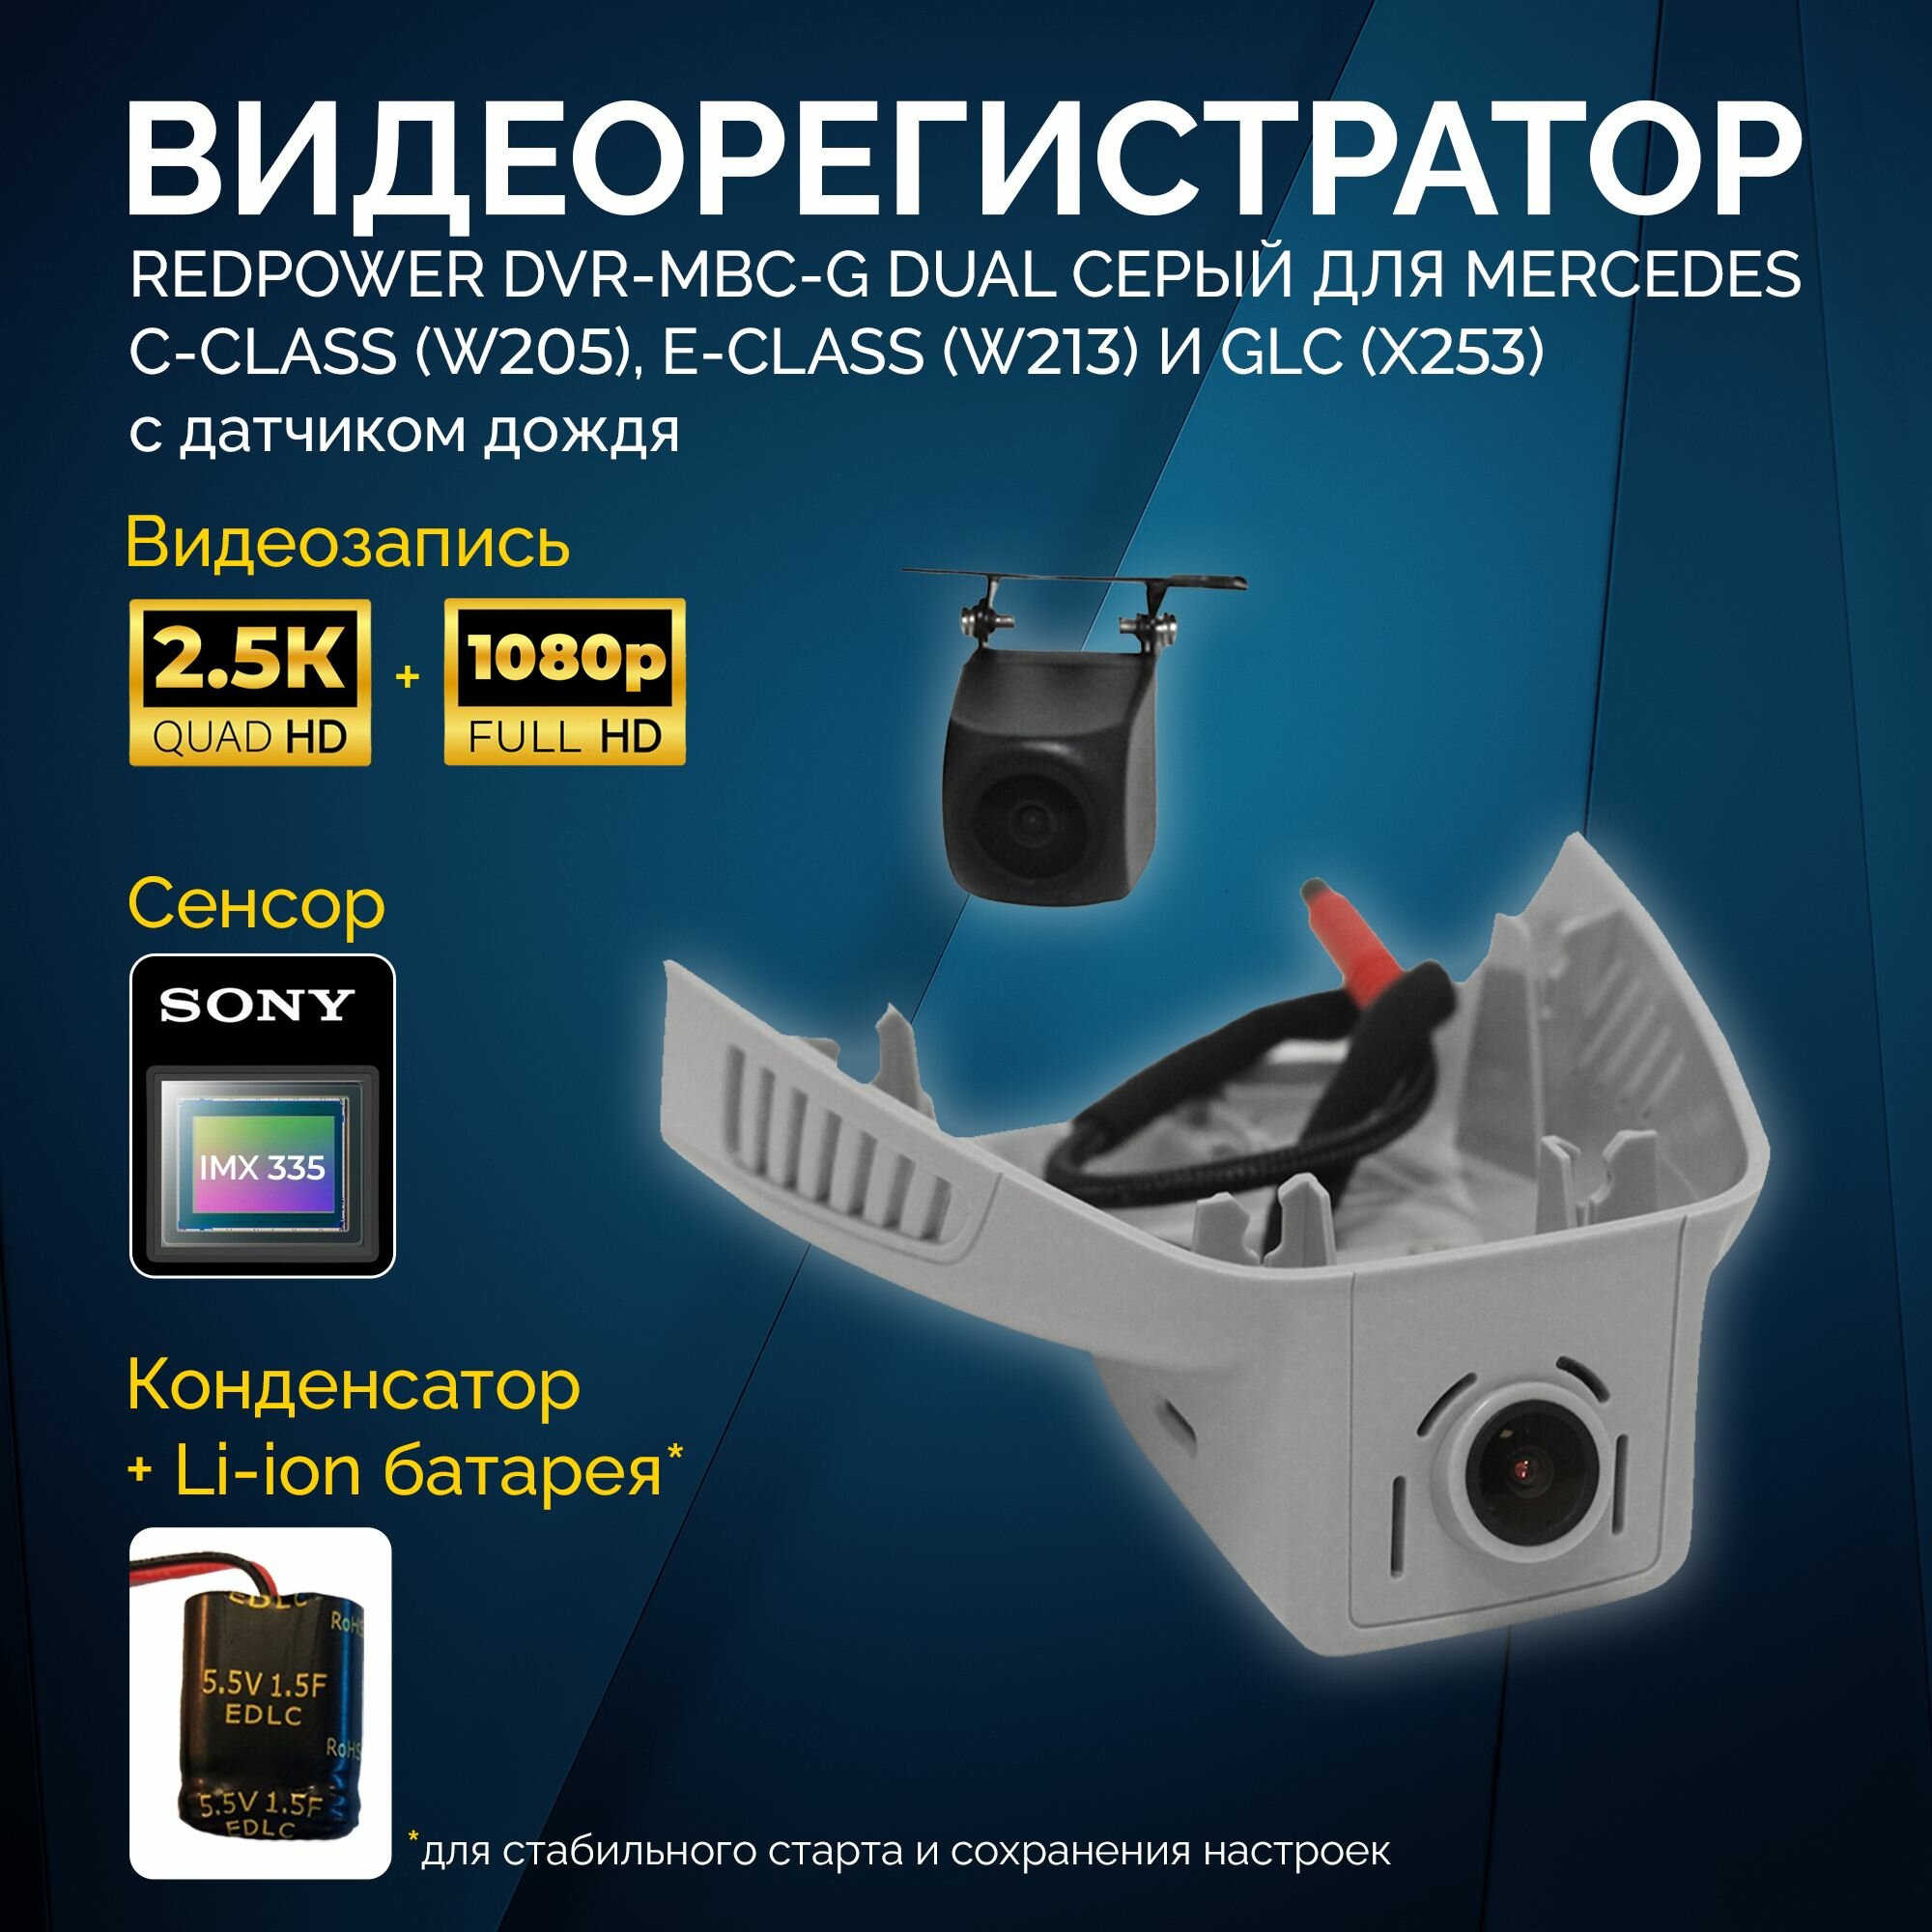 Двухканальный видеорегистратор Redpower DVR-MBC-G Dual для Mercedes C-Class, E-Class и GLC-Class серый